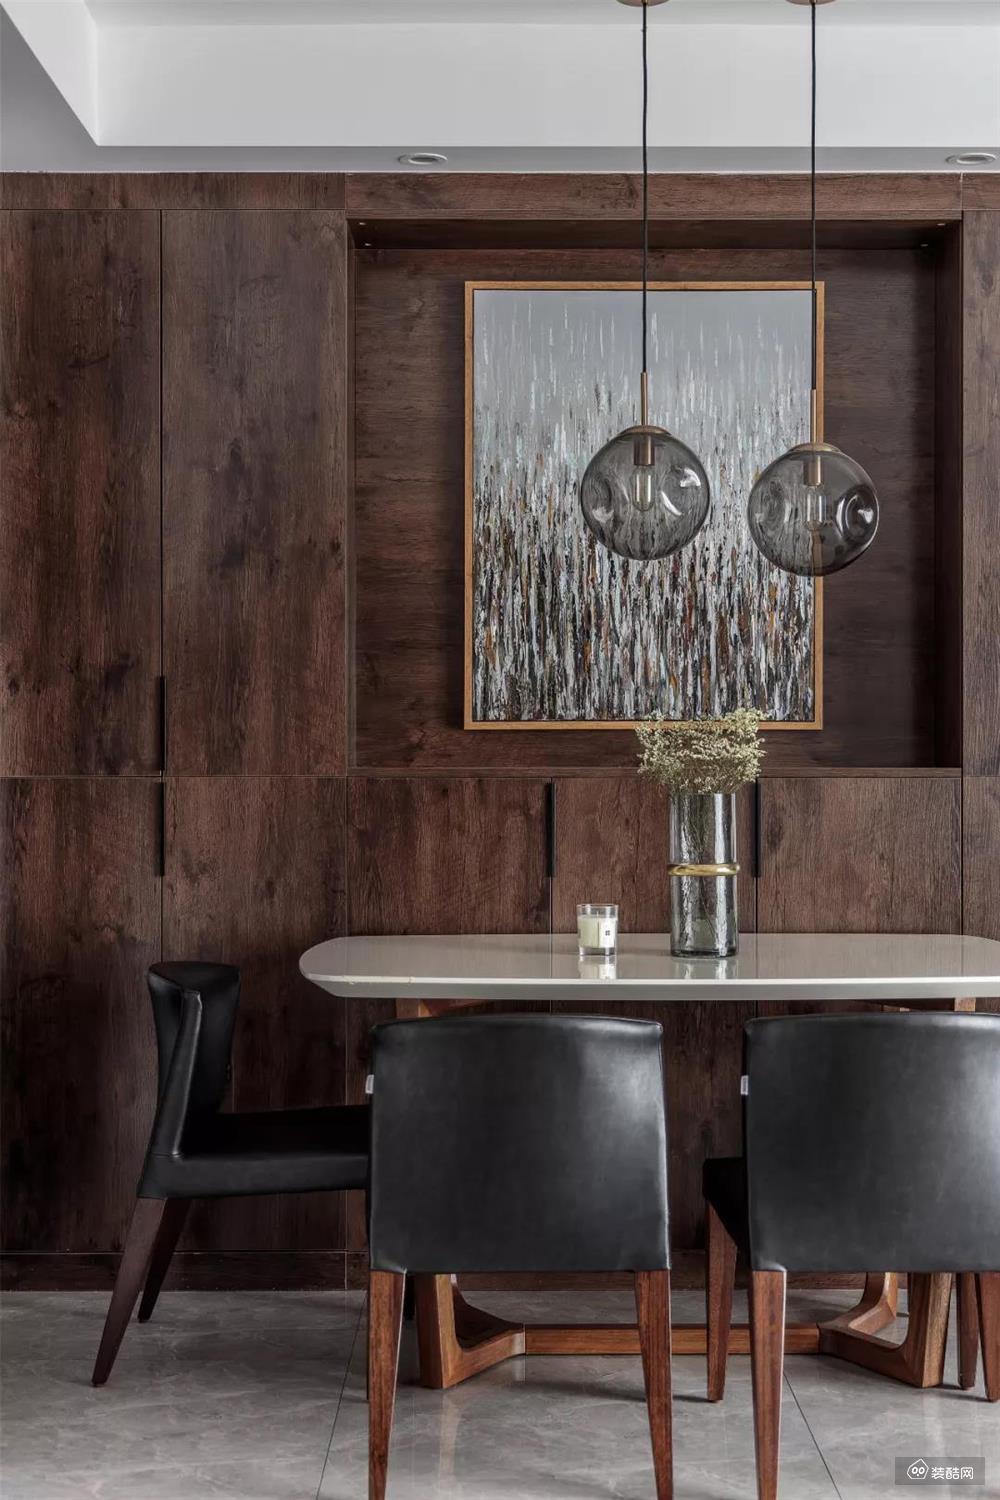 餐厅处的餐边柜选择了深木色的，和餐桌椅起到呼应的效果，看起来很有整体感。这种略带复古感的颜色，也让餐厅看起来更格调感。